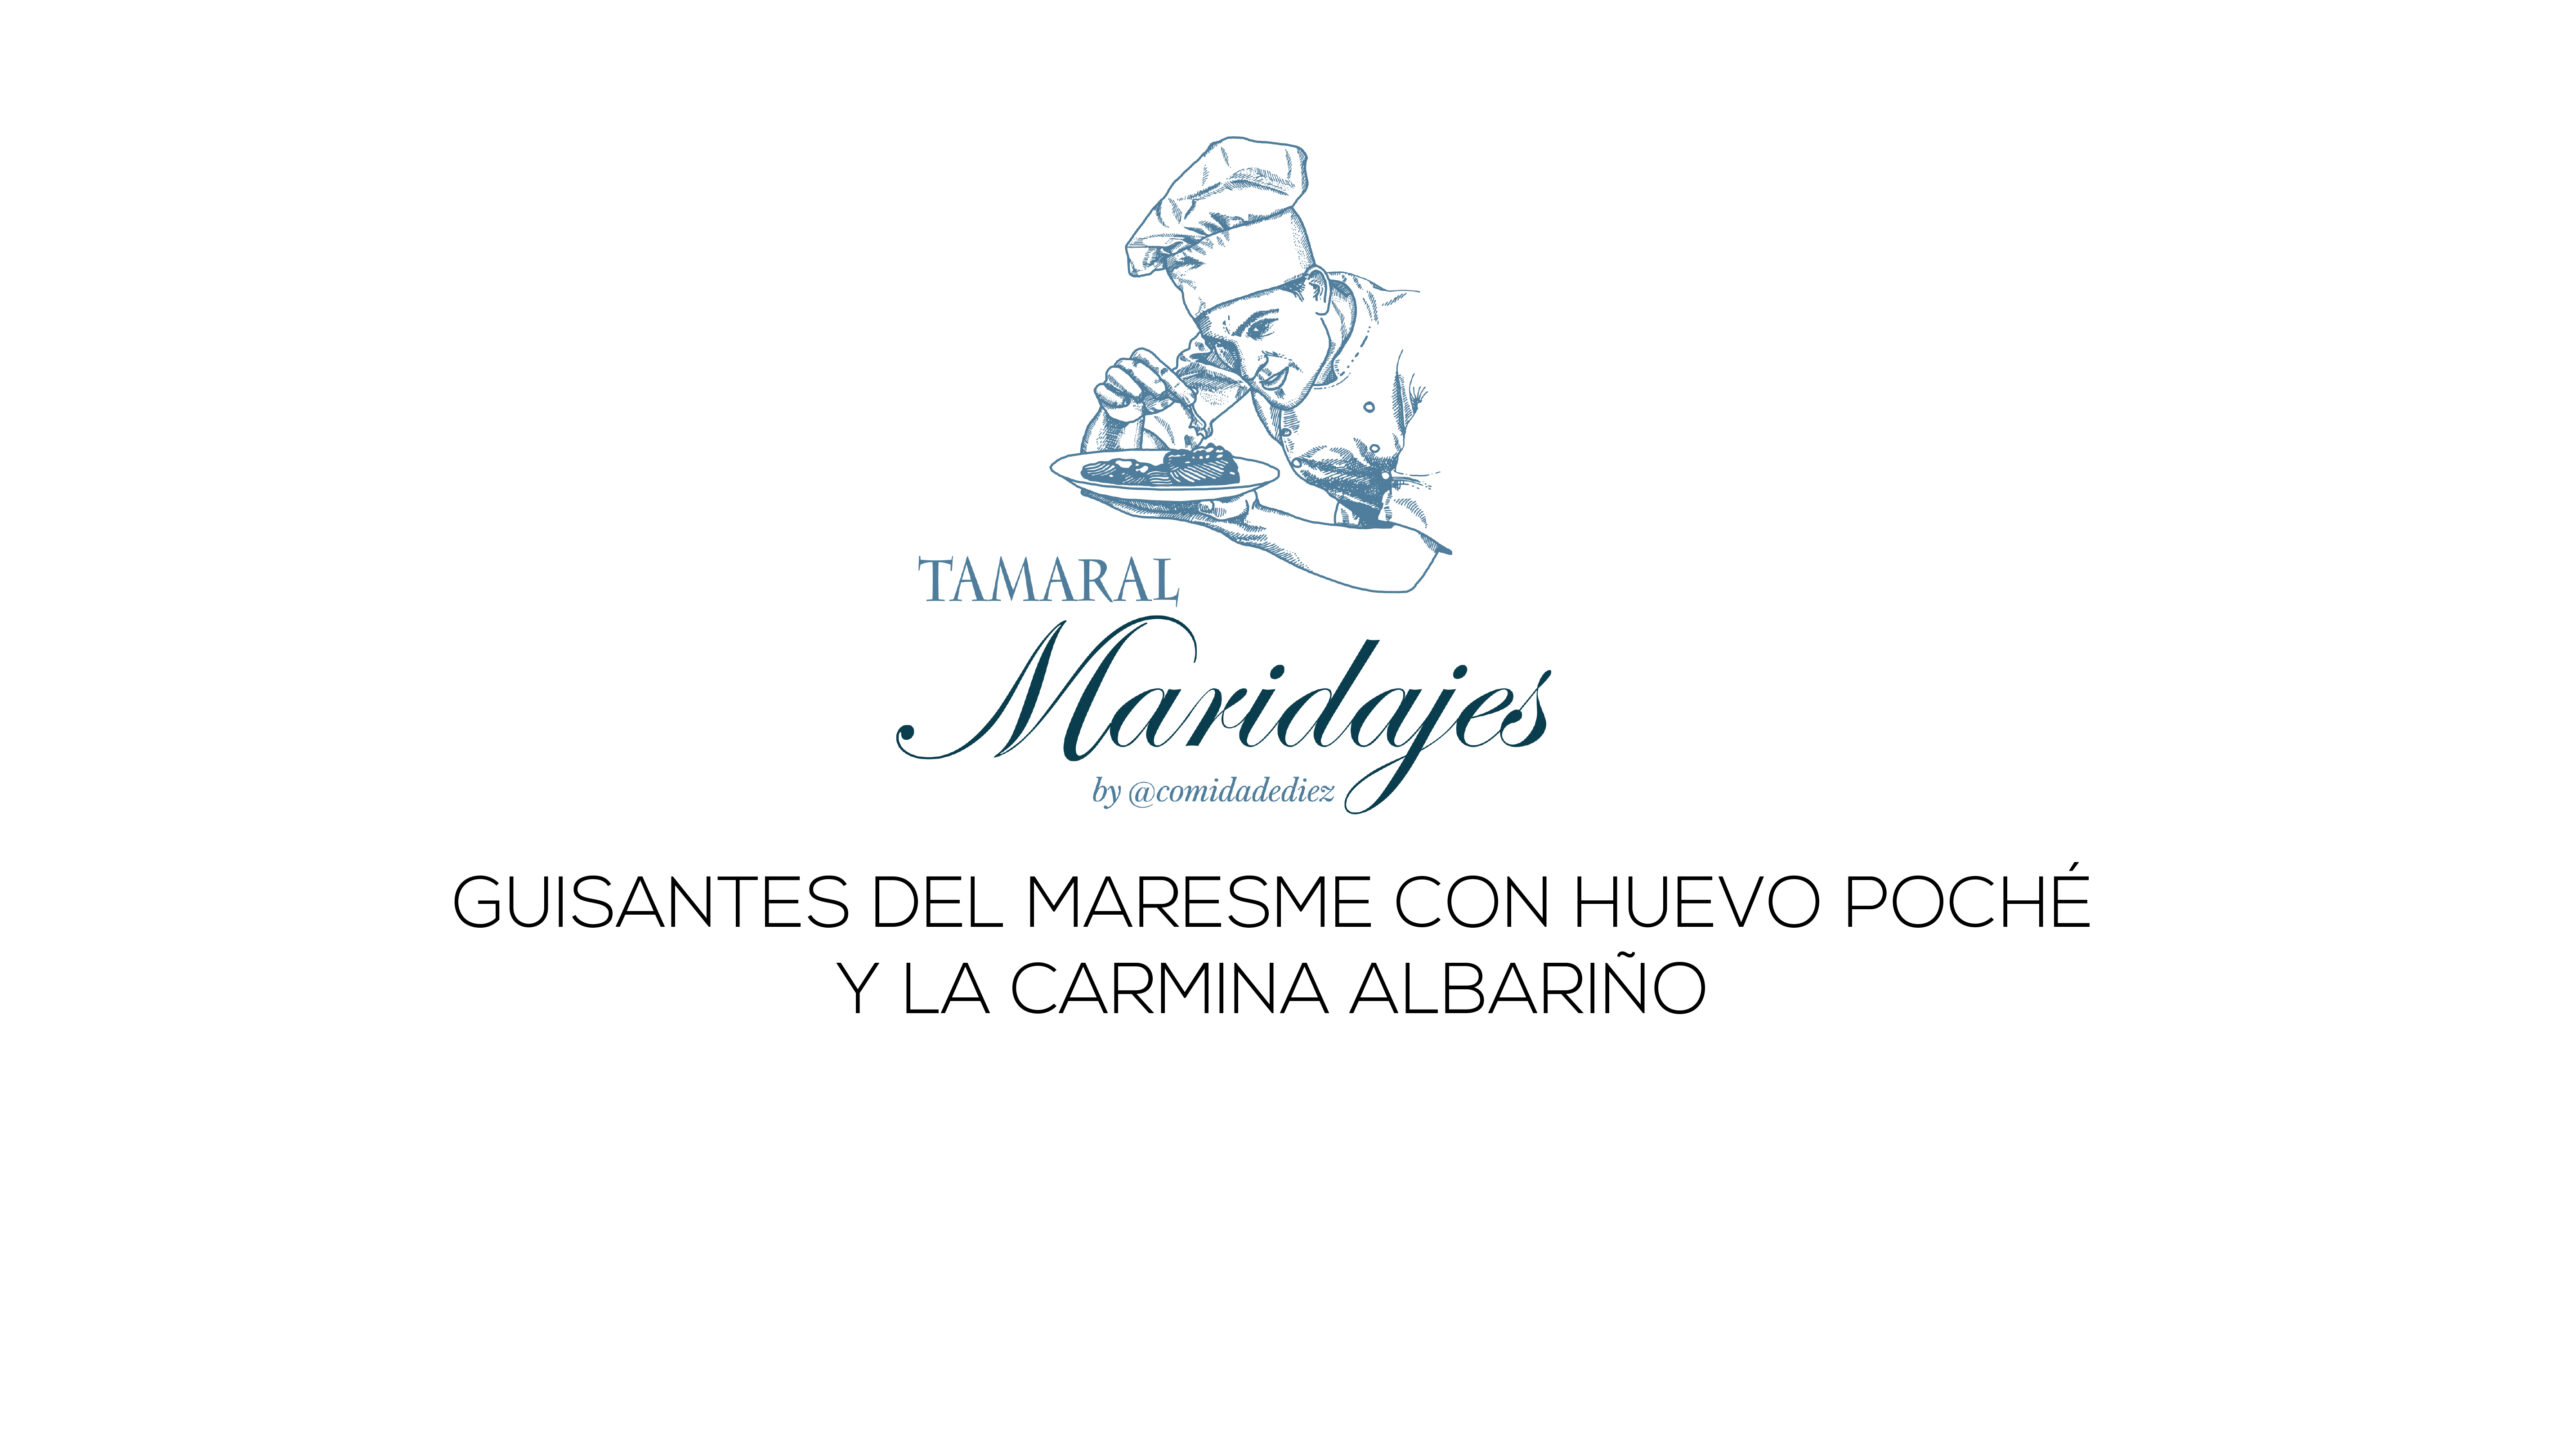 Maridajes Tamaral: Guisantes del Maresme con huevo poché